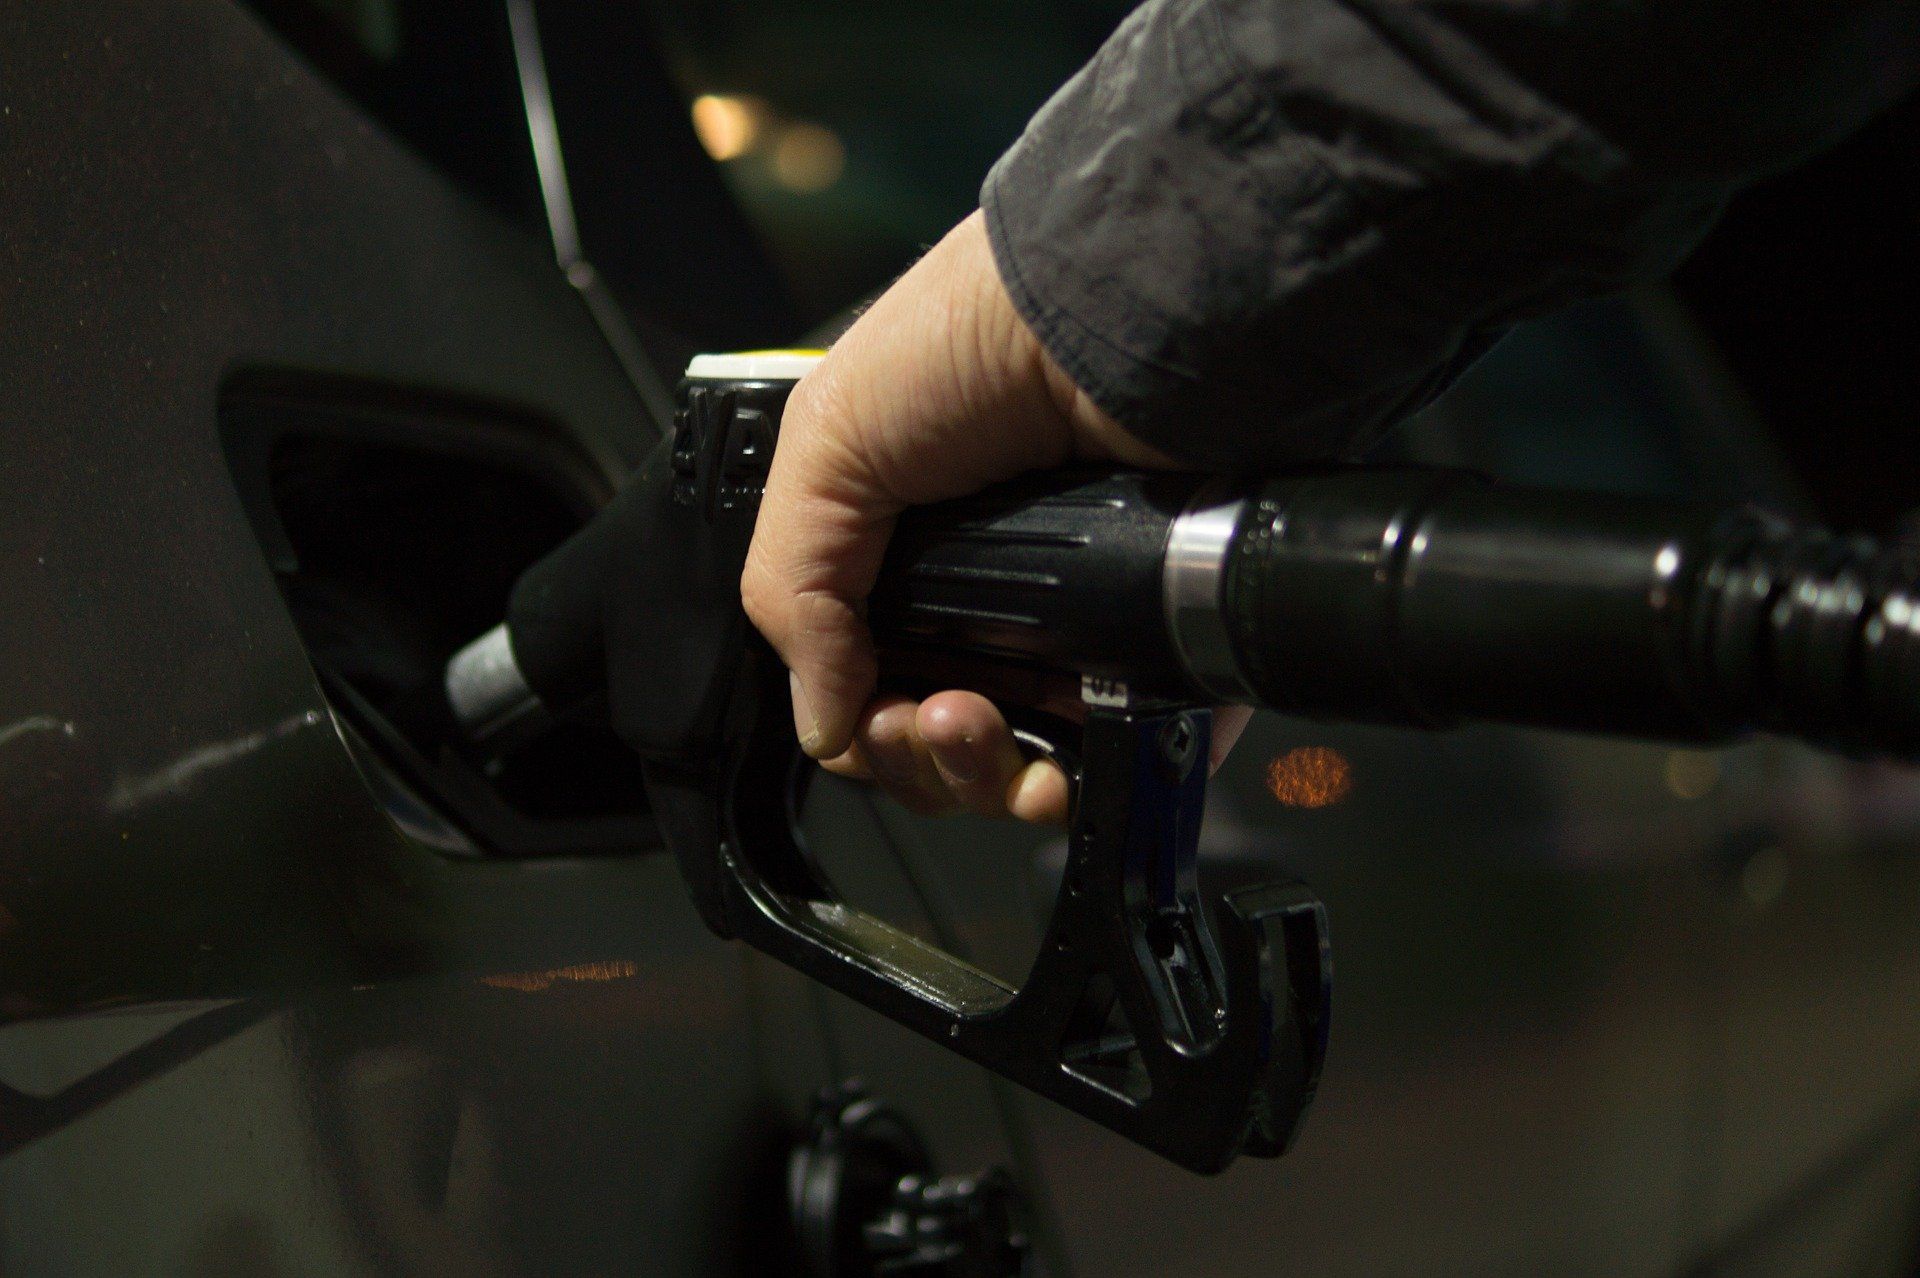 Fuel price May 25, 2022: Petrol Rs 96.72, diesel Rs 89.62 in Delhi